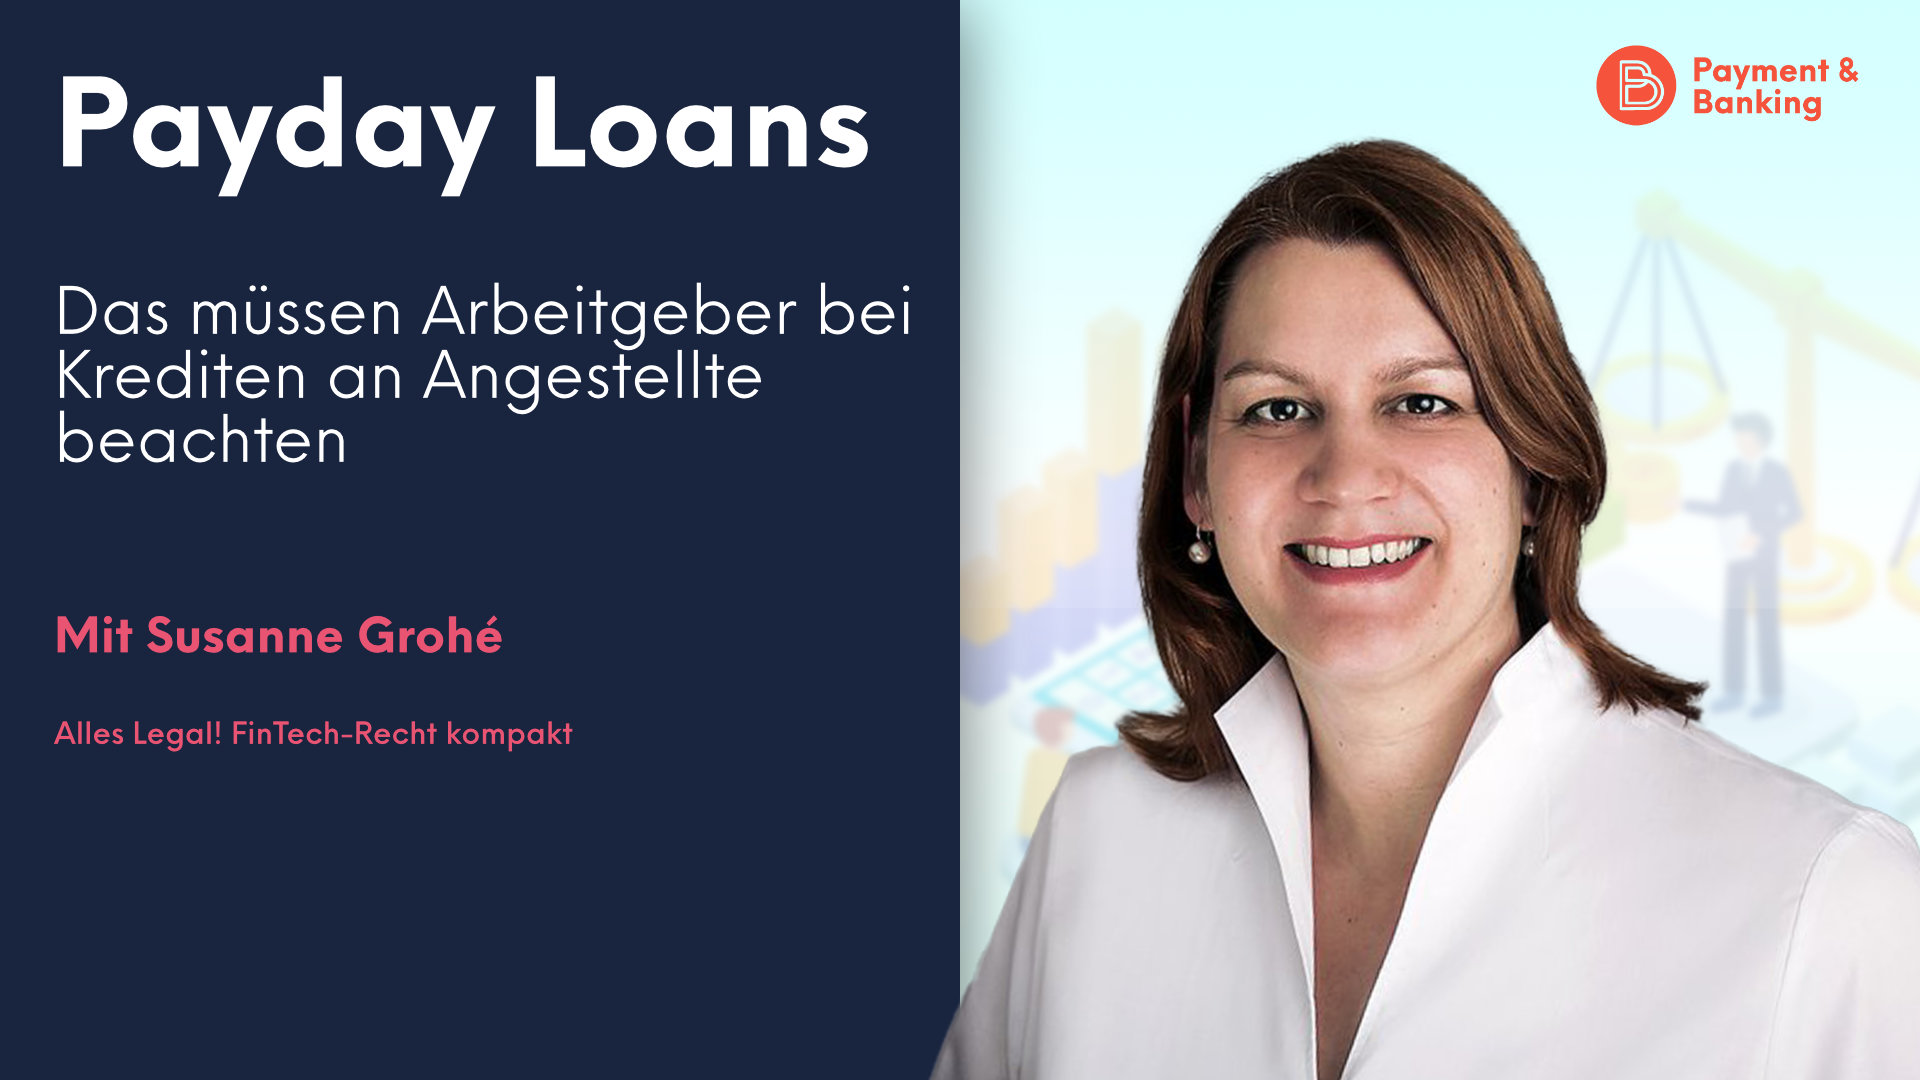 Payday Loans sind in Deutschland angekommen. Noch fristen sie eher ein Randdasein, doch Arbeitgeber sollten wissen, worauf sie sich einlassen.